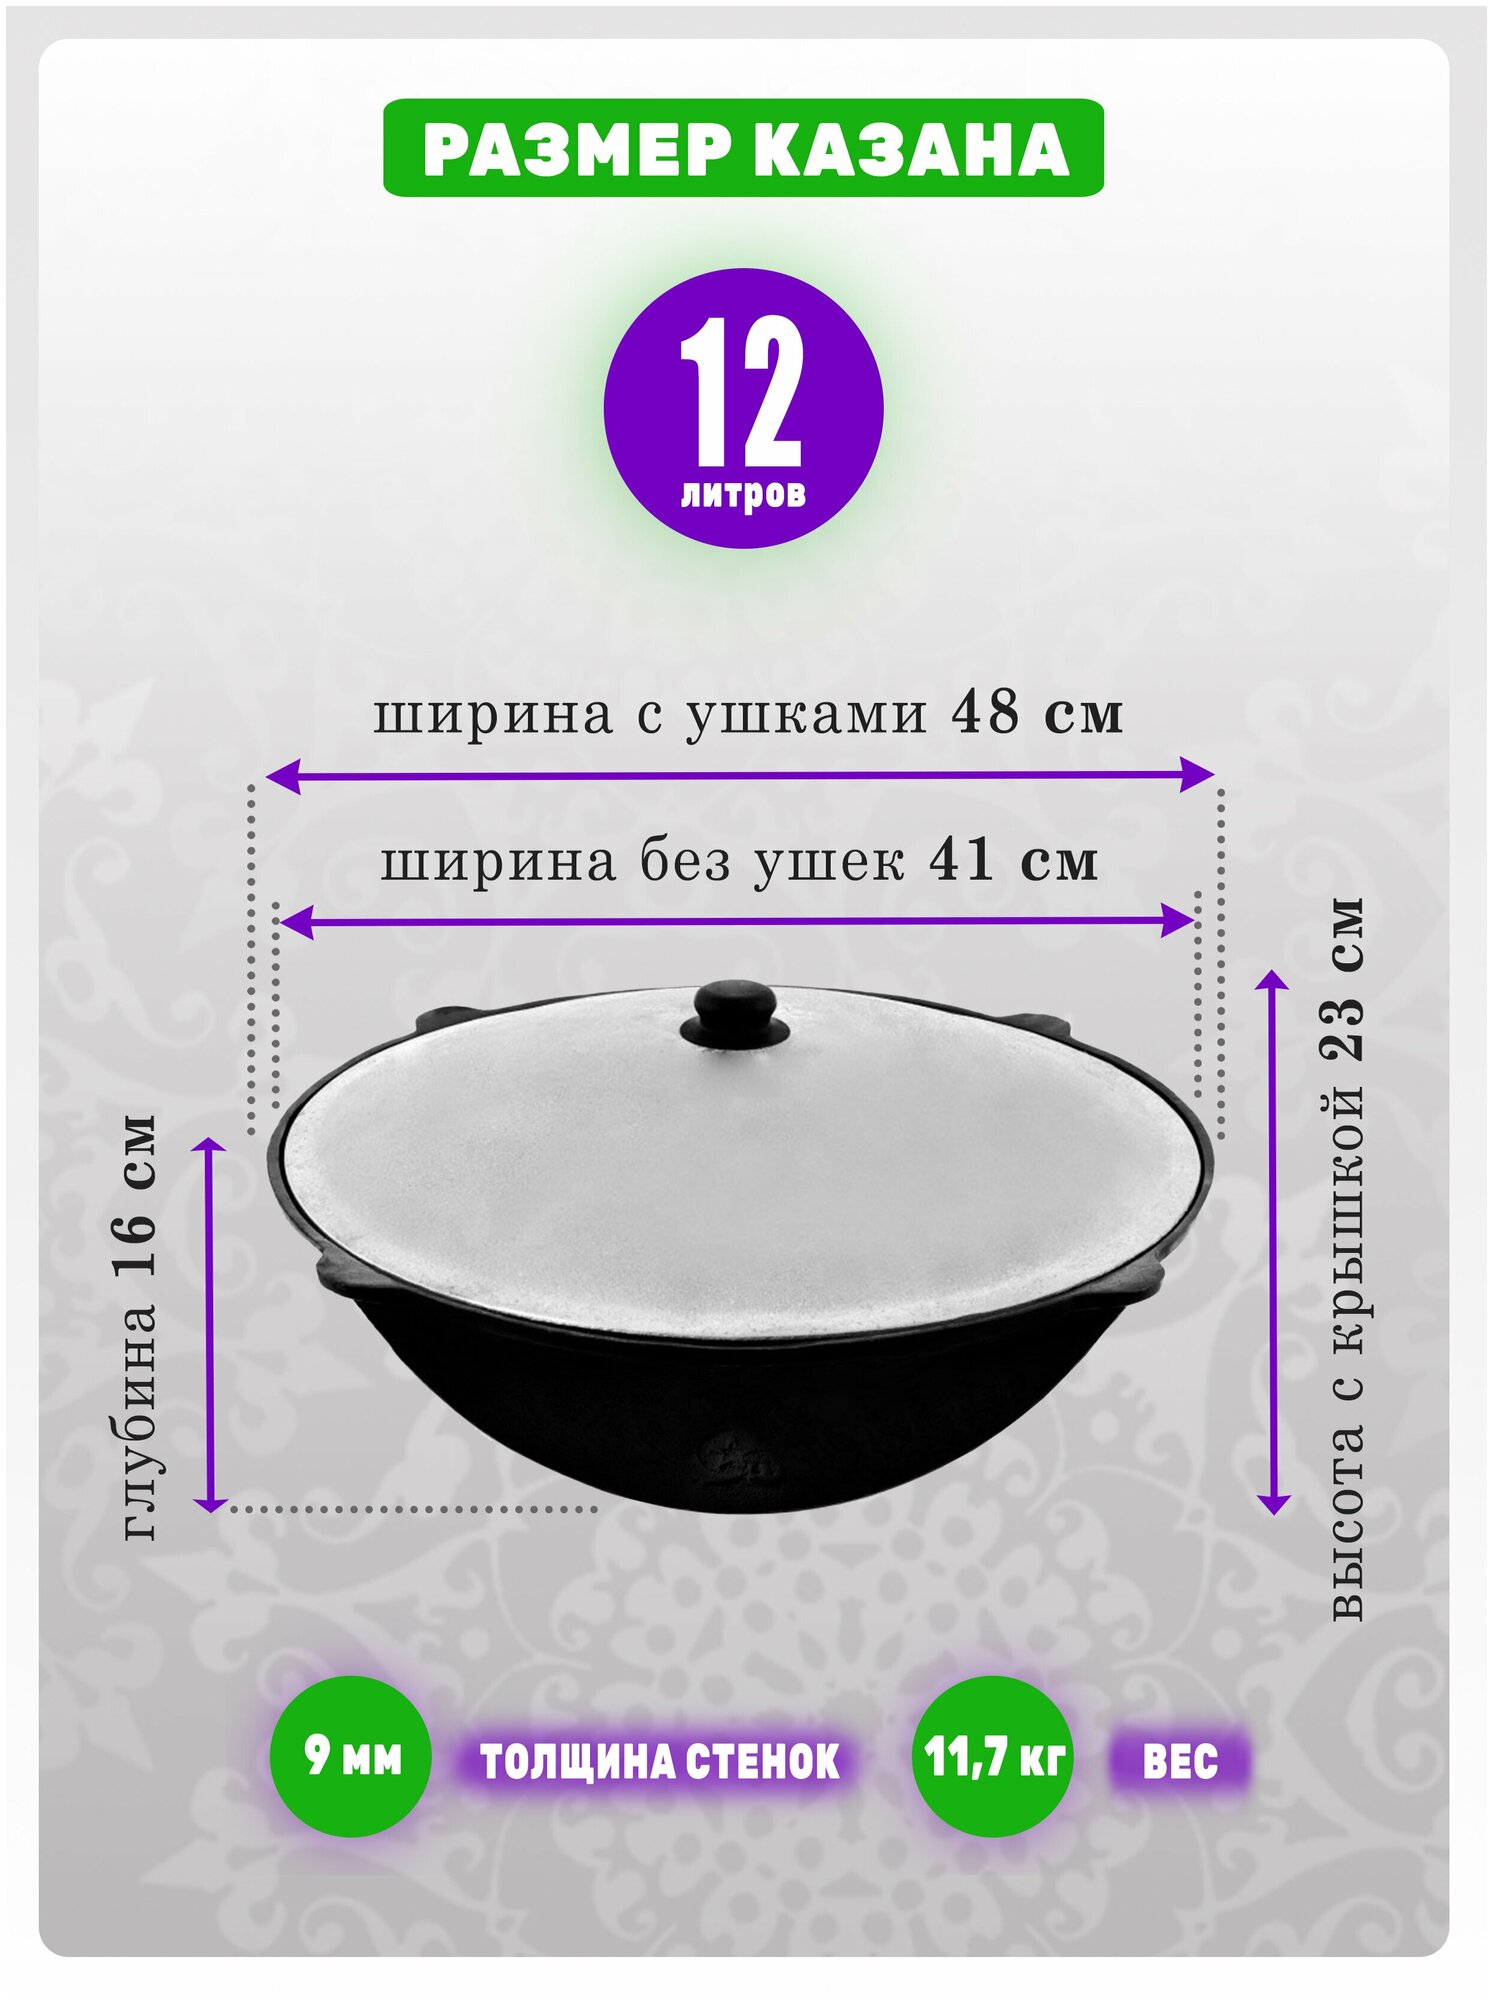 Комплект: Печь усиленная с дверцей и казан узбекский, чугунный, 12 литров, с круглым дном, обожженный, шлифованный, крышка алюминий. - фотография № 3